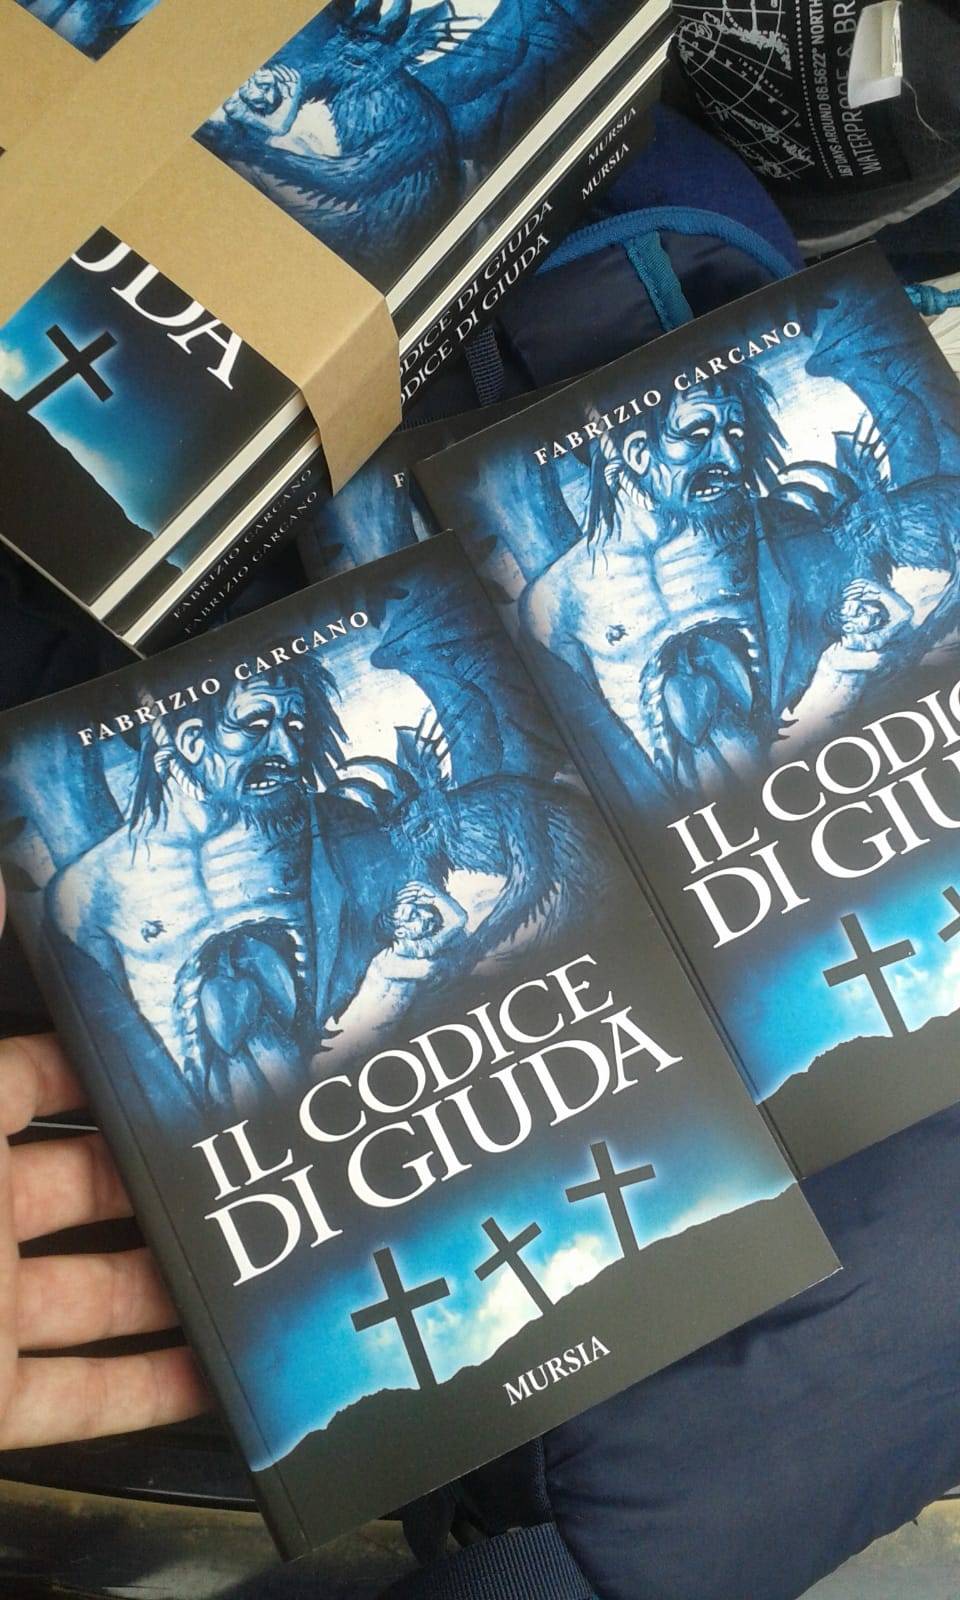 "Il codice di Giuda", il nuovo romanzo di Carcano tra assassini e vangeli apocrifi